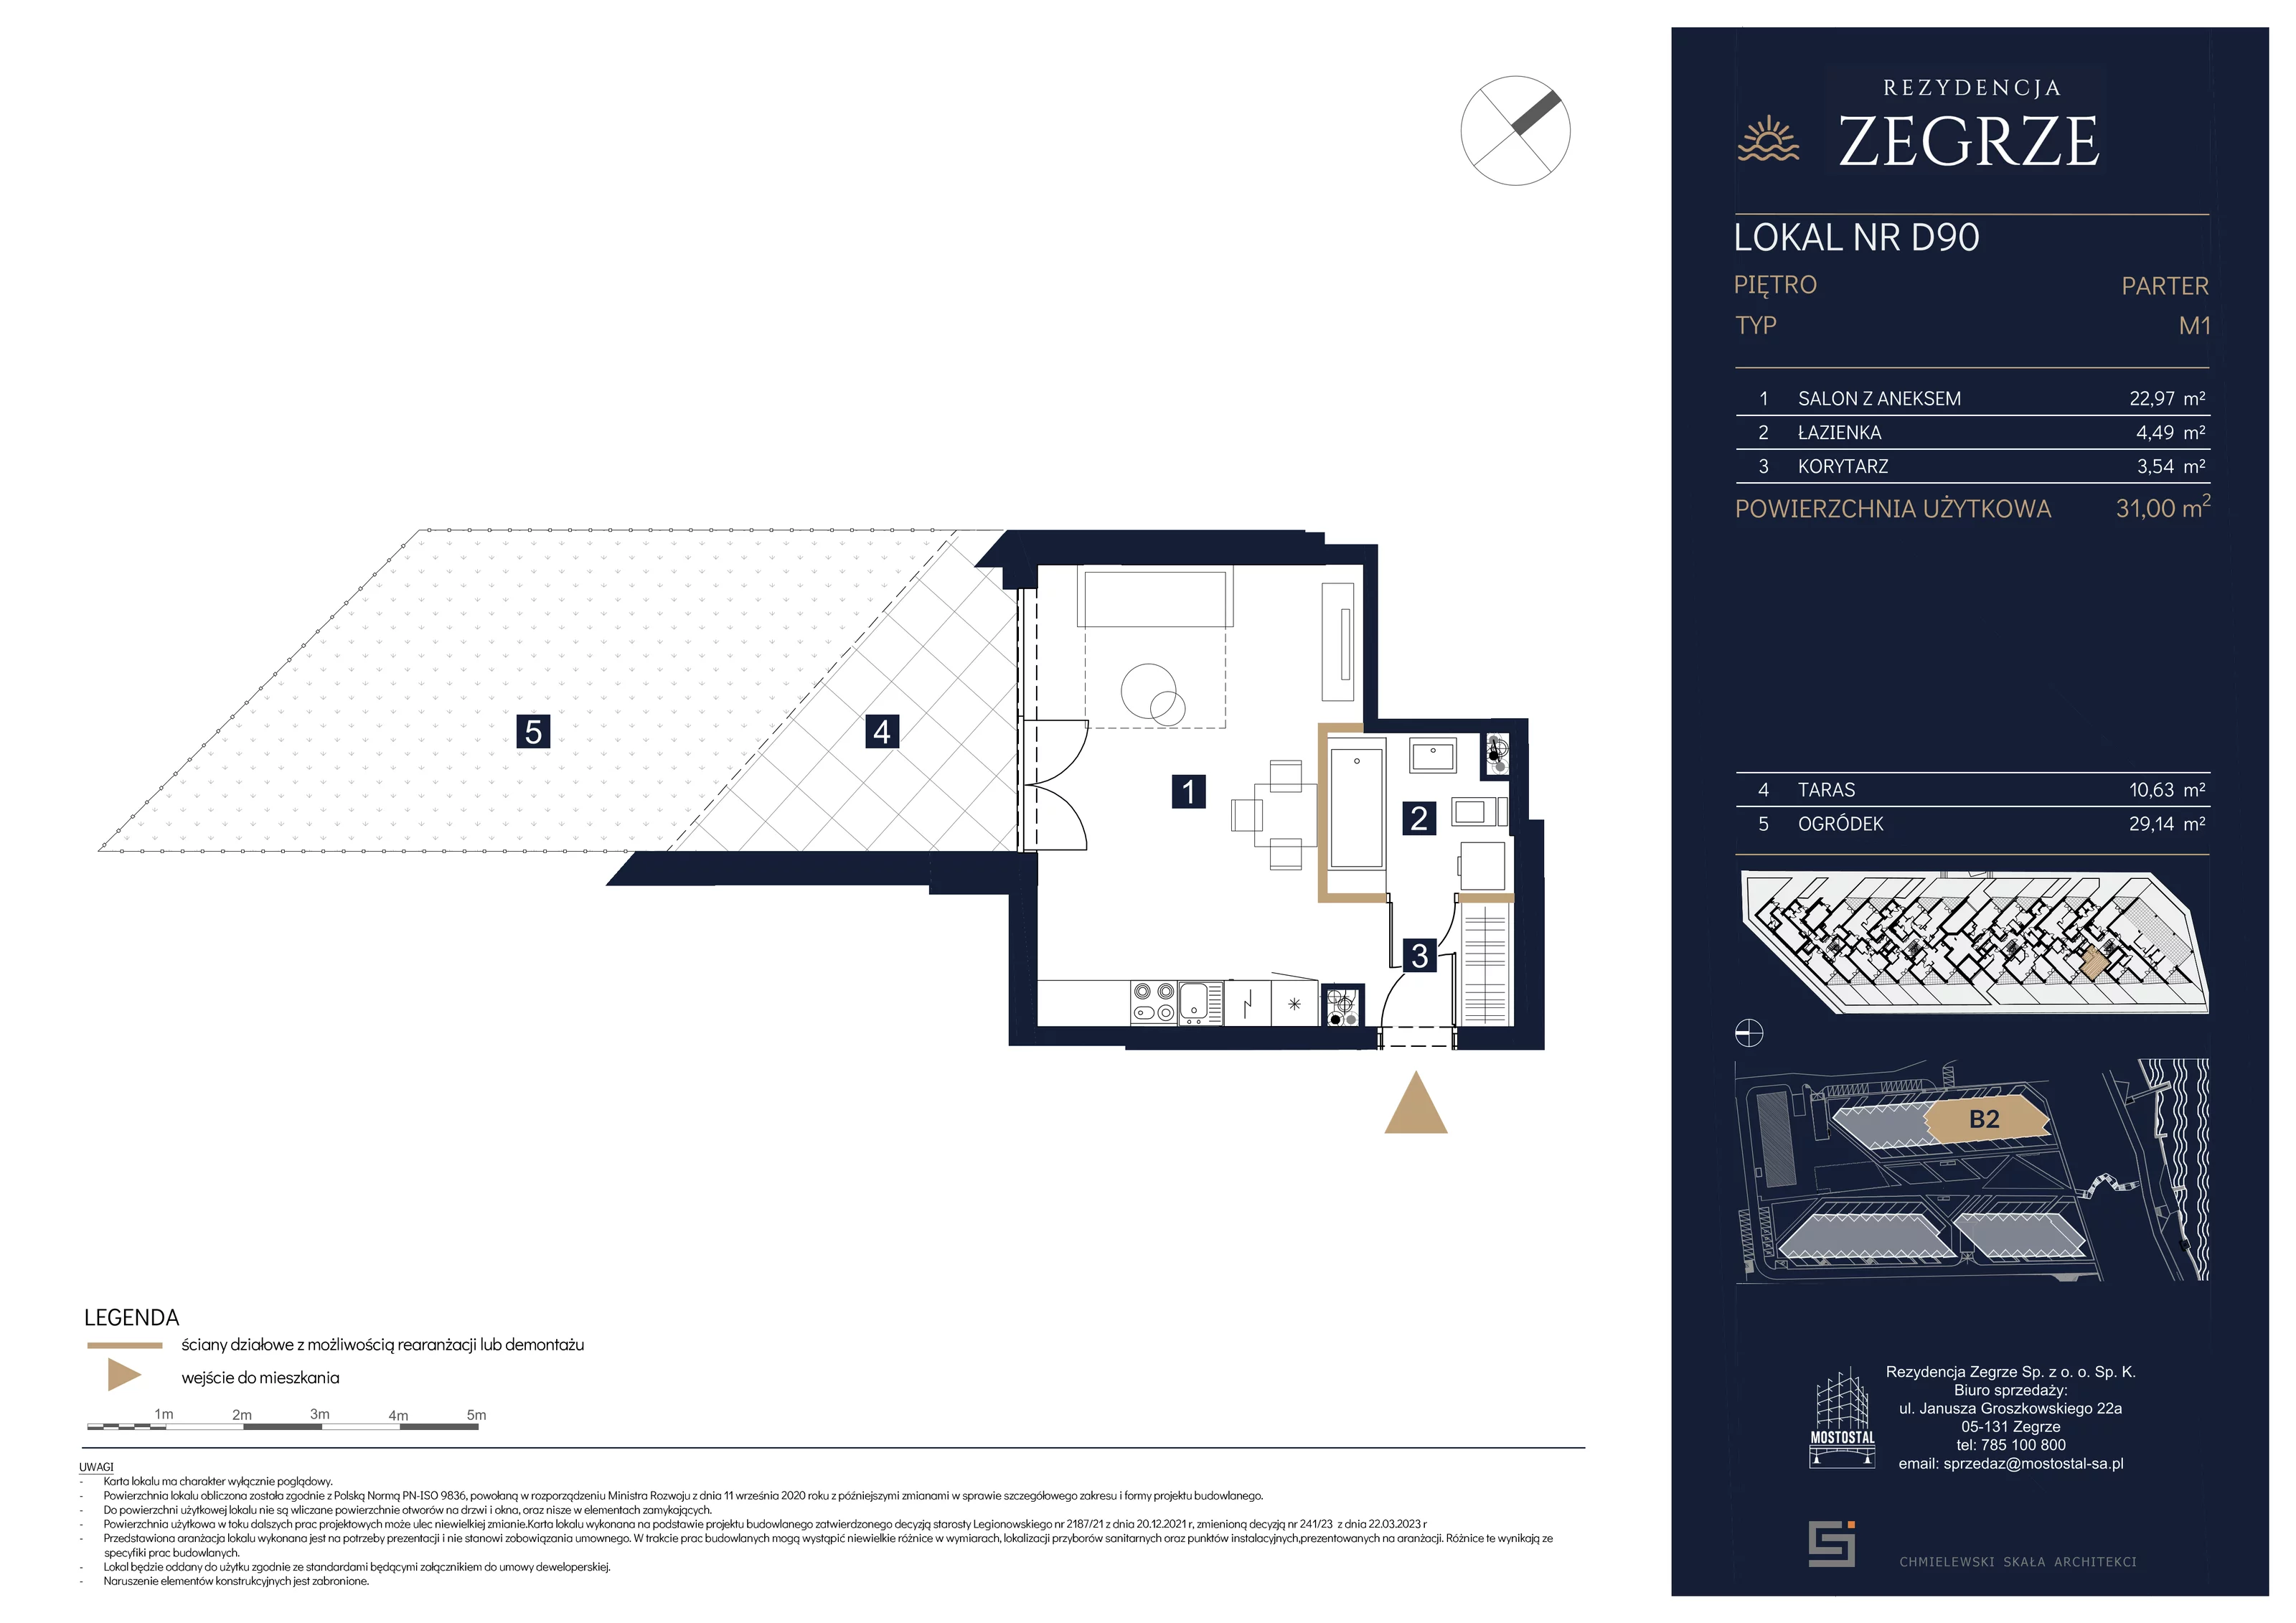 Mieszkanie 31,00 m², parter, oferta nr B2.1.D.90, Rezydencja Zegrze II, Zegrze, ul. Groszkowskiego 22A